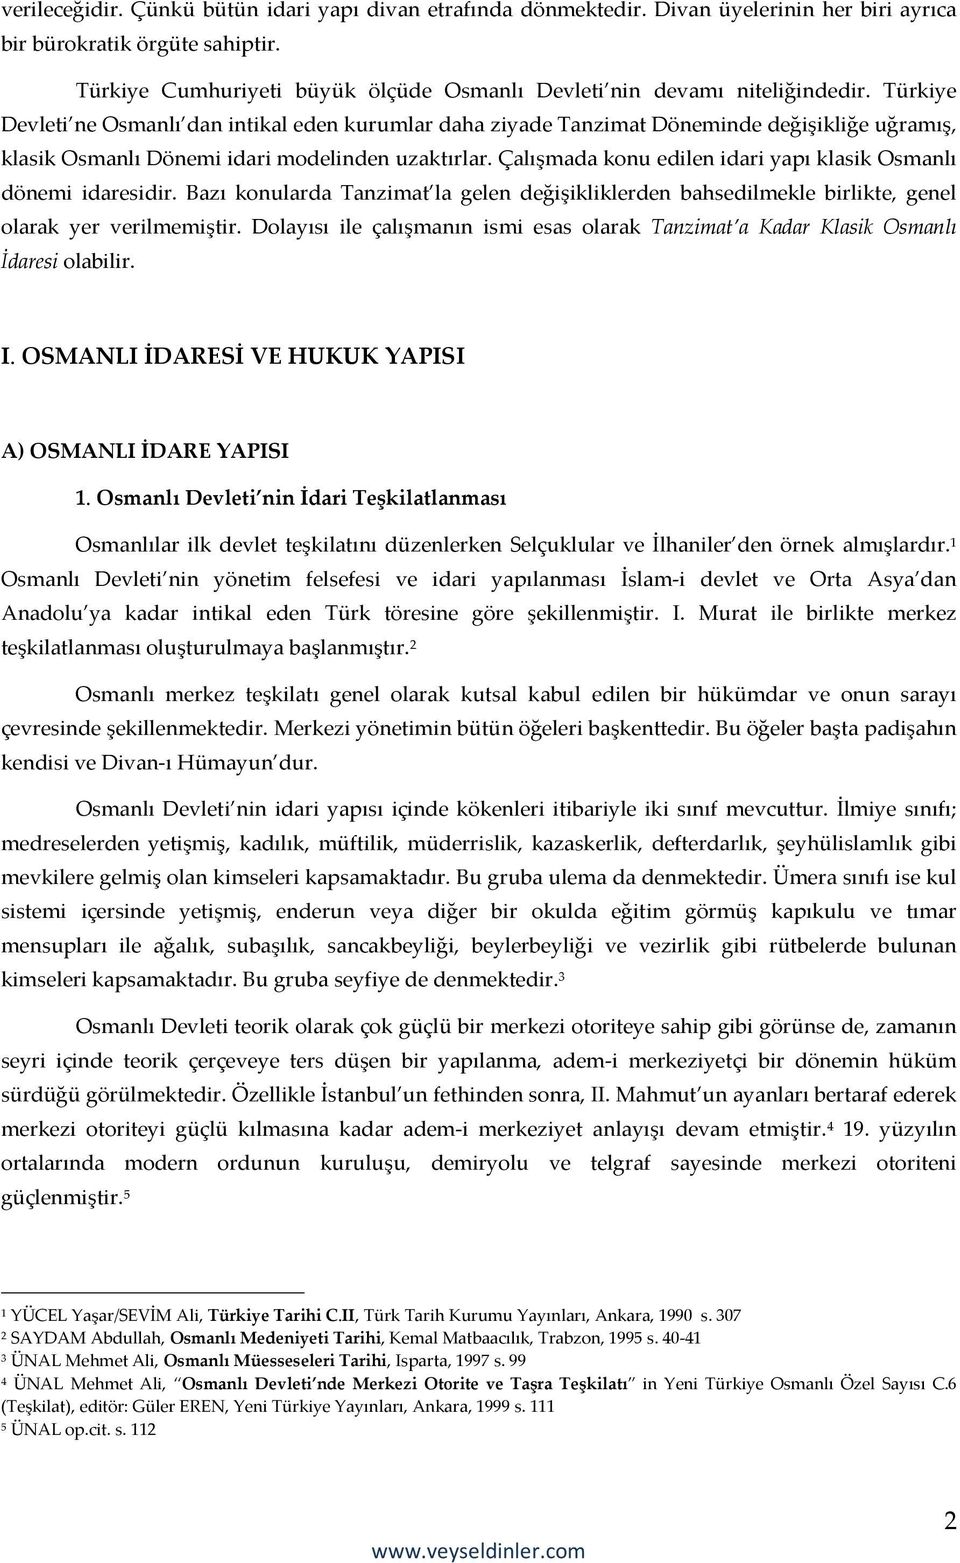 Türkiye Devleti ne Osmanlı dan intikal eden kurumlar daha ziyade Tanzimat Döneminde değişikliğe uğramış, klasik Osmanlı Dönemi idari modelinden uzaktırlar.